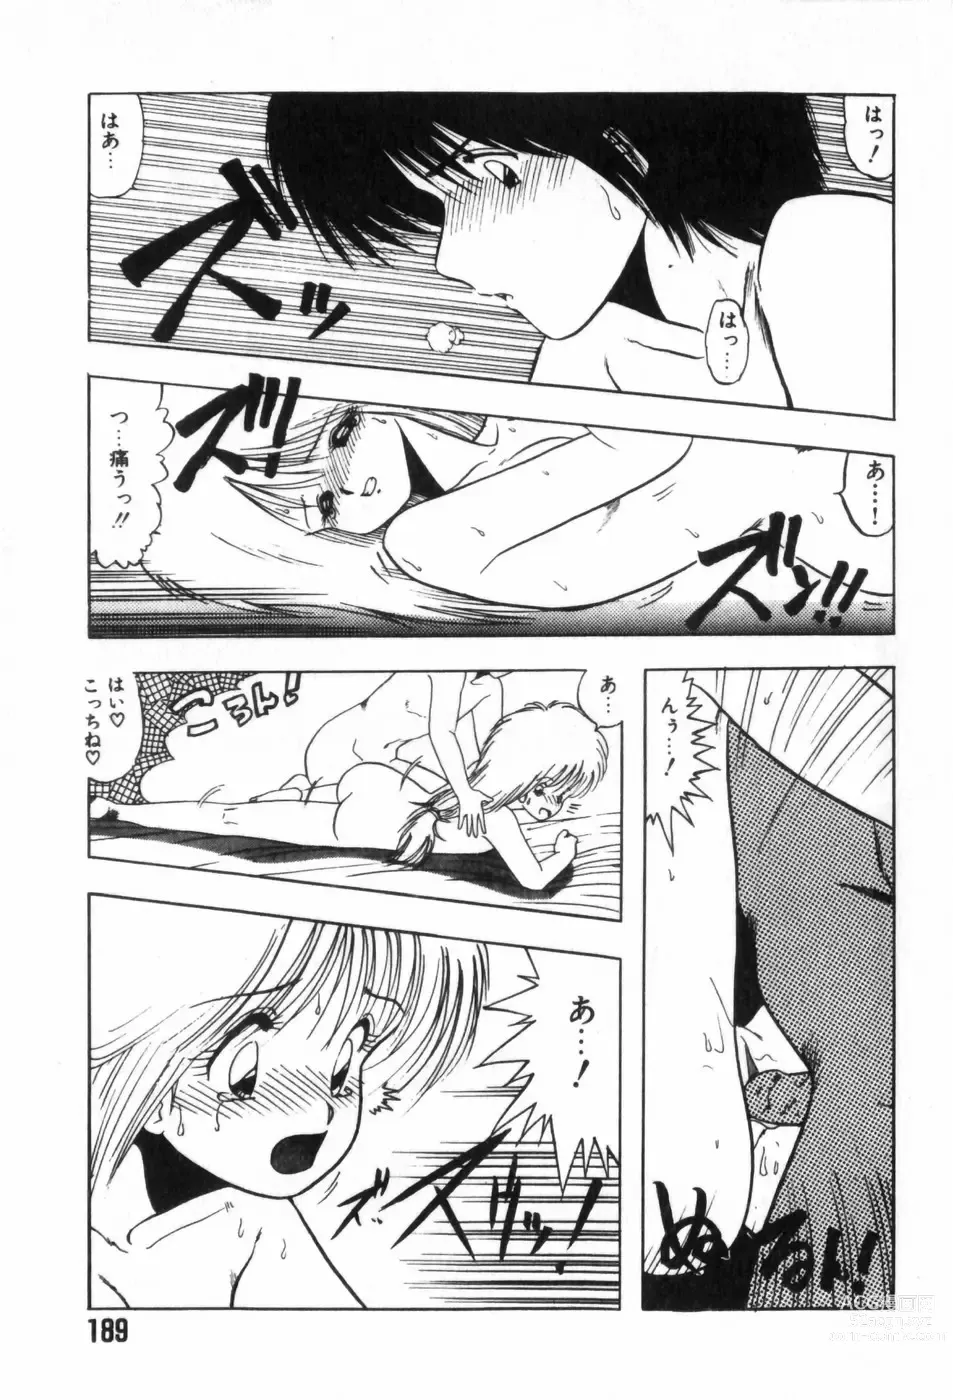 Page 193 of manga Funi Funi Hanjuku Musume